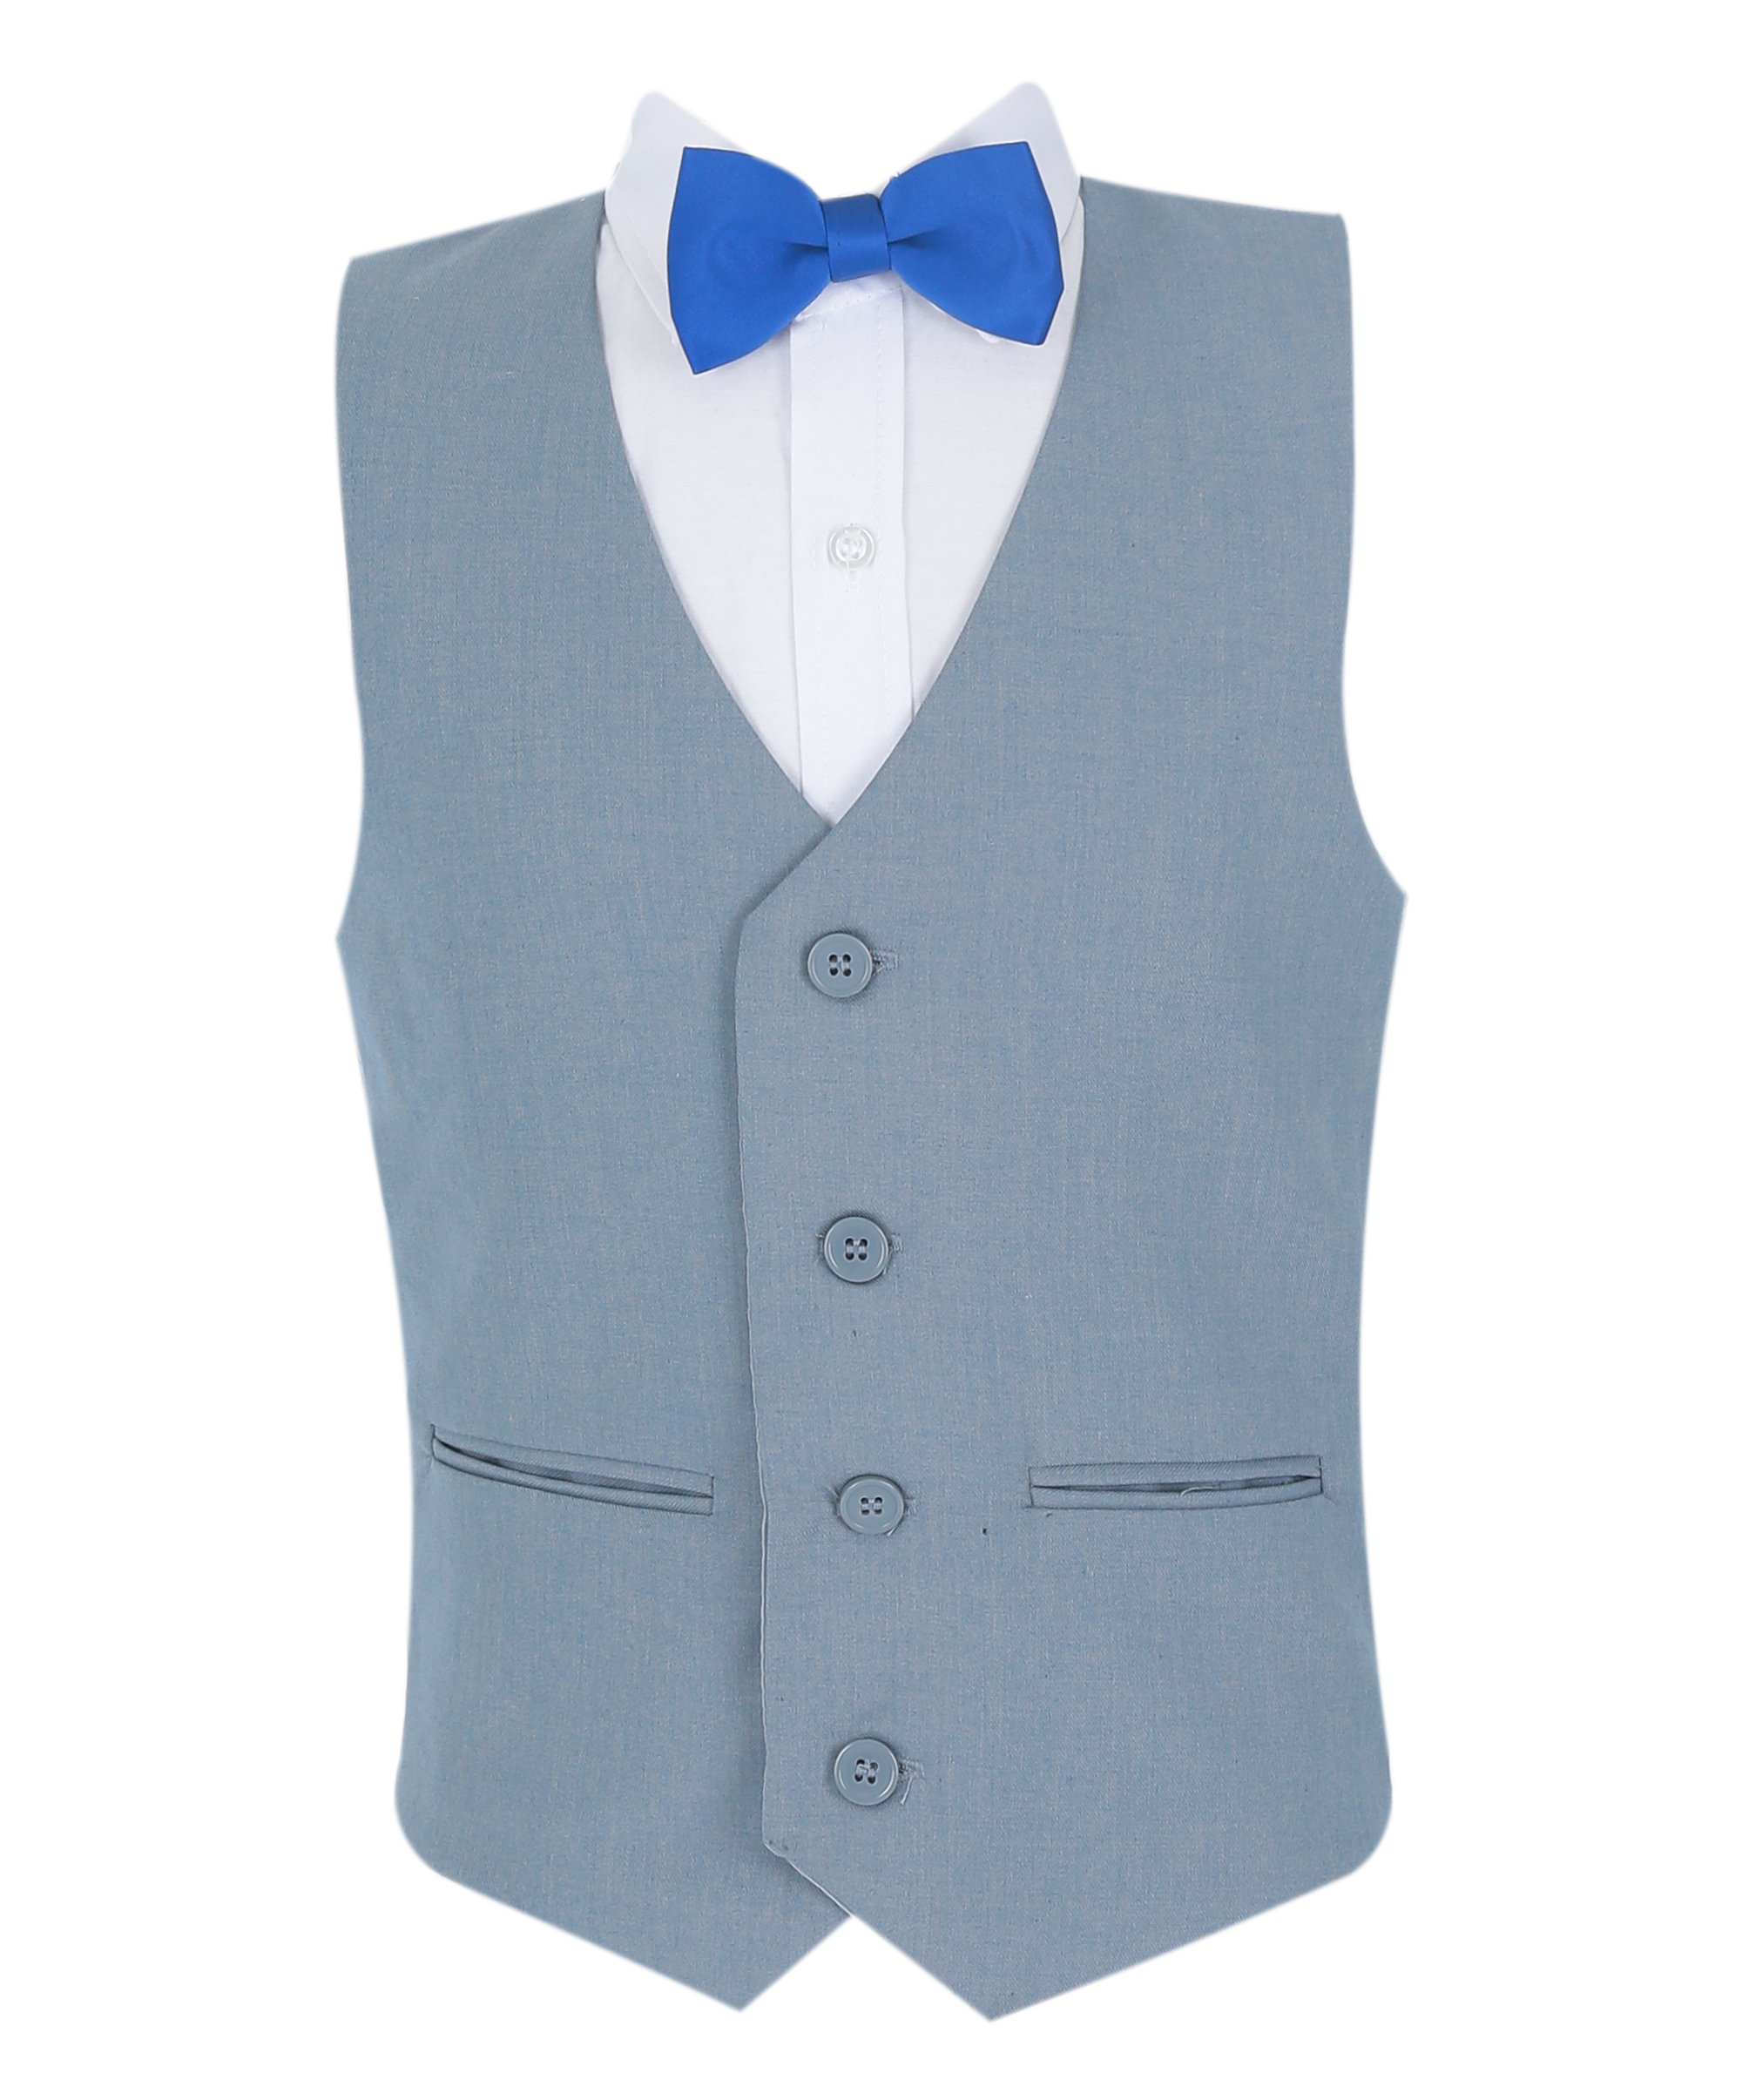 Boys Summer Vest Suit 4 PC Set - Grey